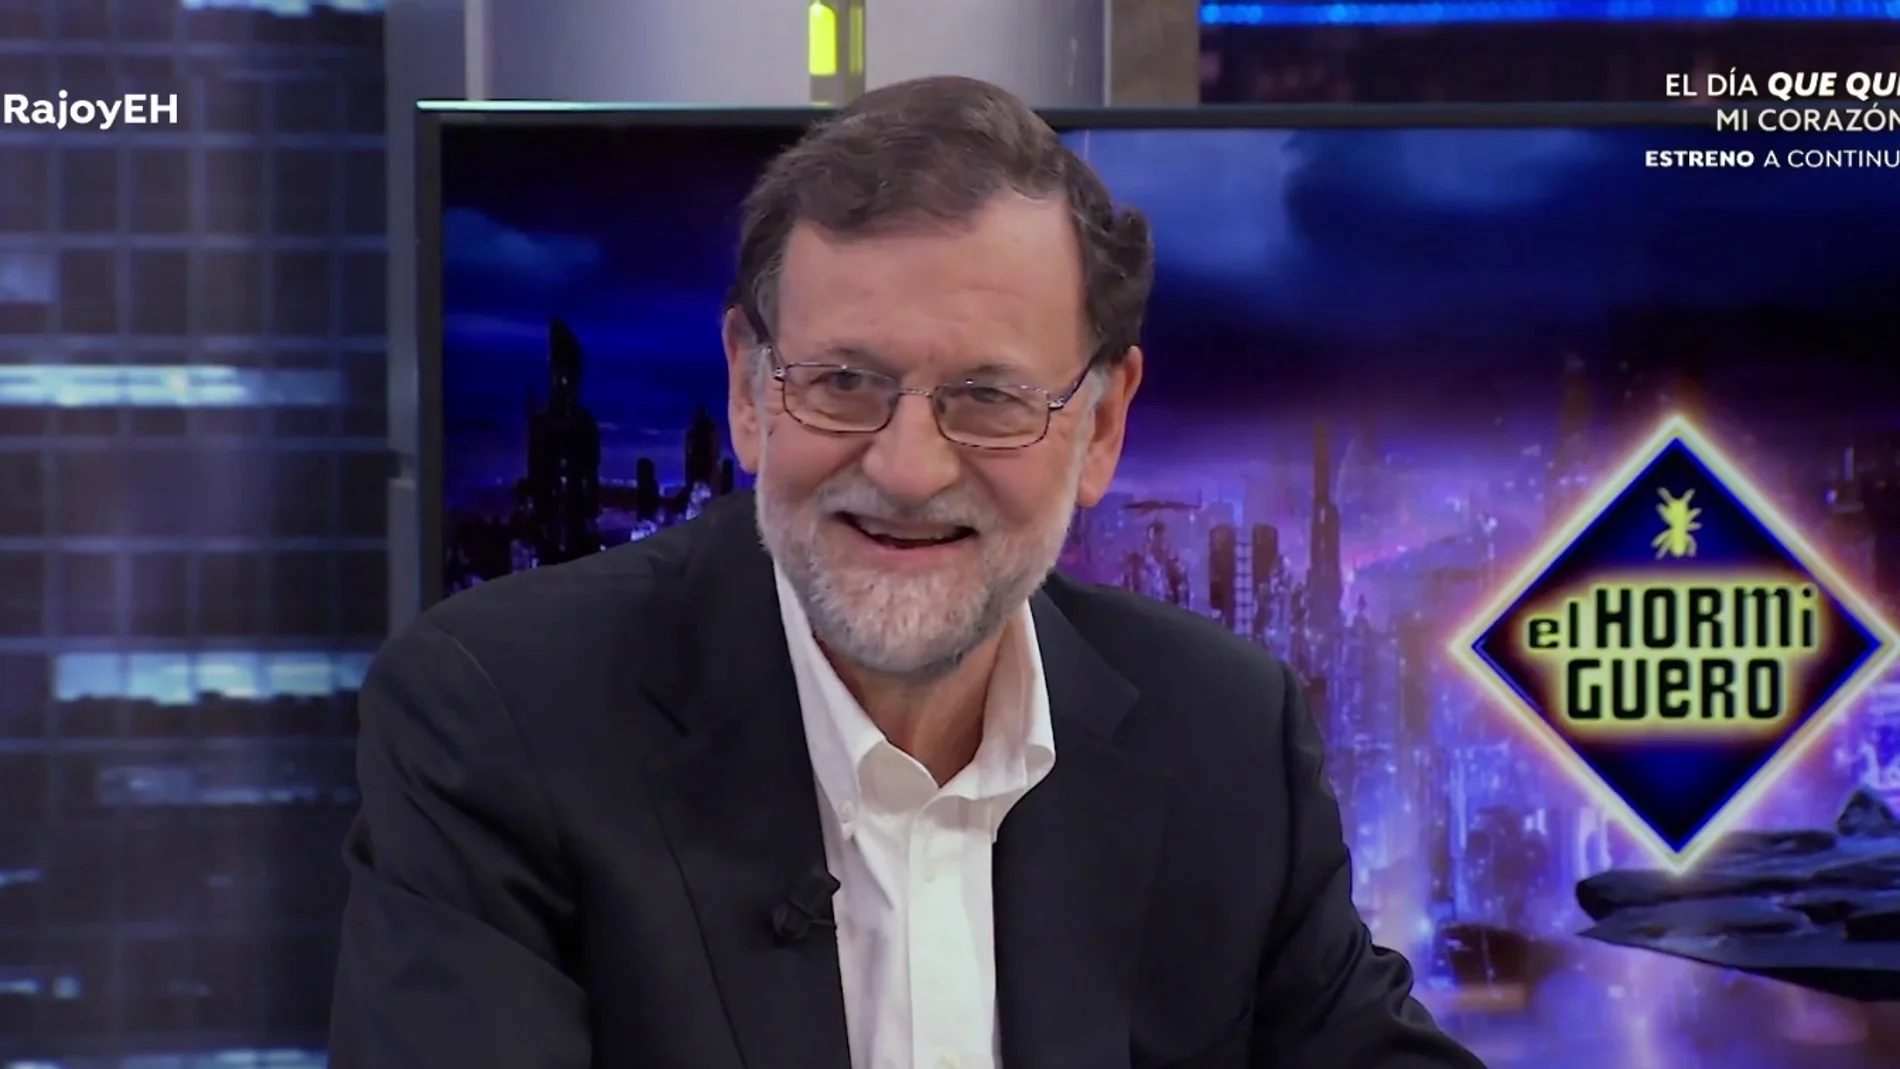 Mariano Rajoy, sobre el frío reencuentro entre Ayuso y Casado: "Ni cobra, ni protocolo, fui yo"